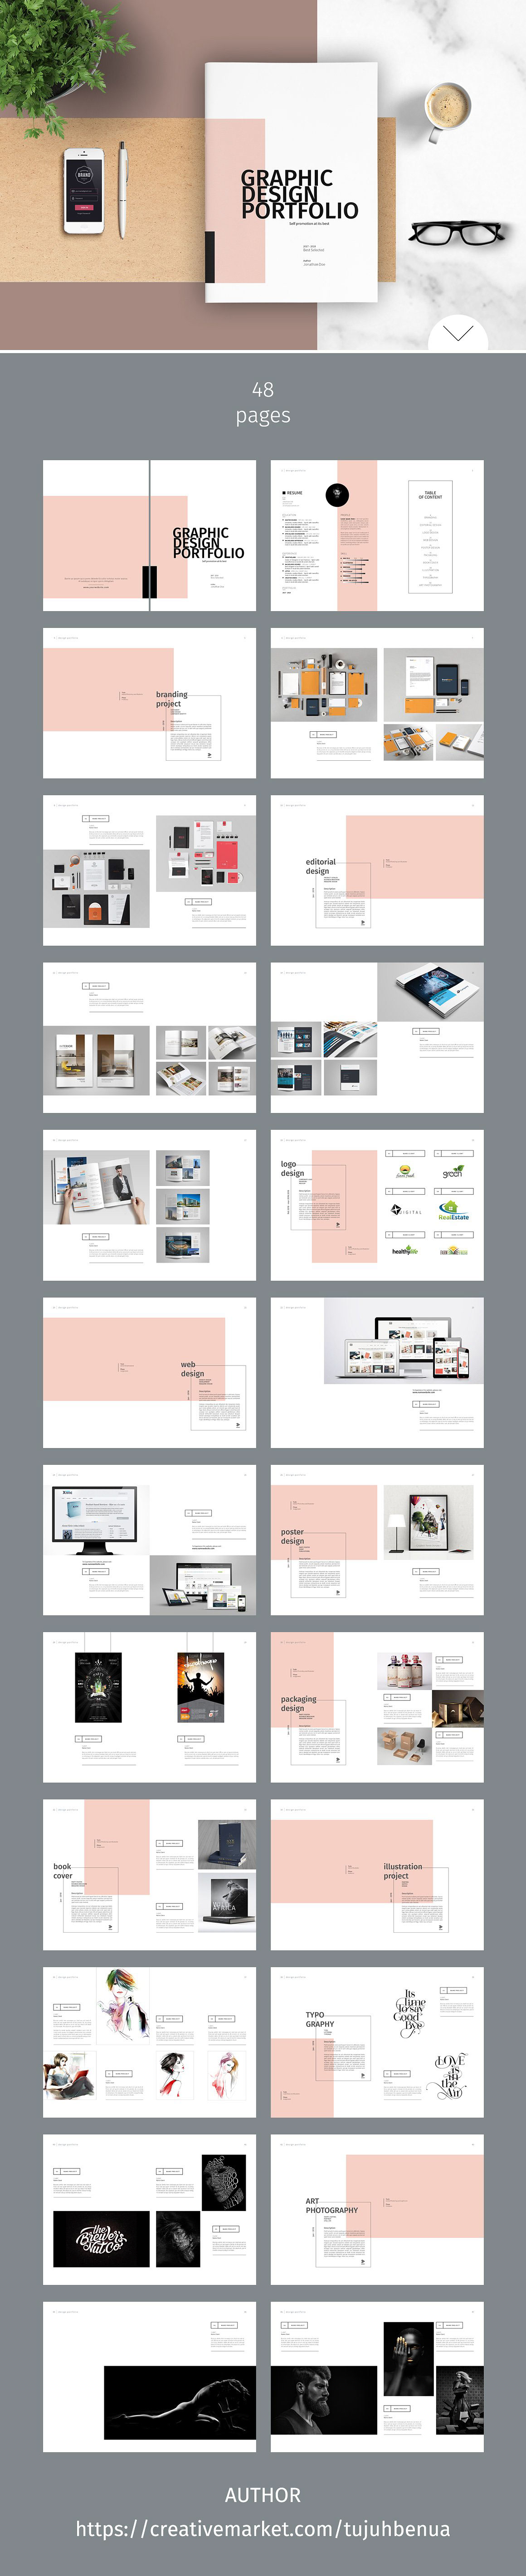 graphic design portfolio design portfolio print portfolio Designer Portfolio printed portfolio Portfolio template